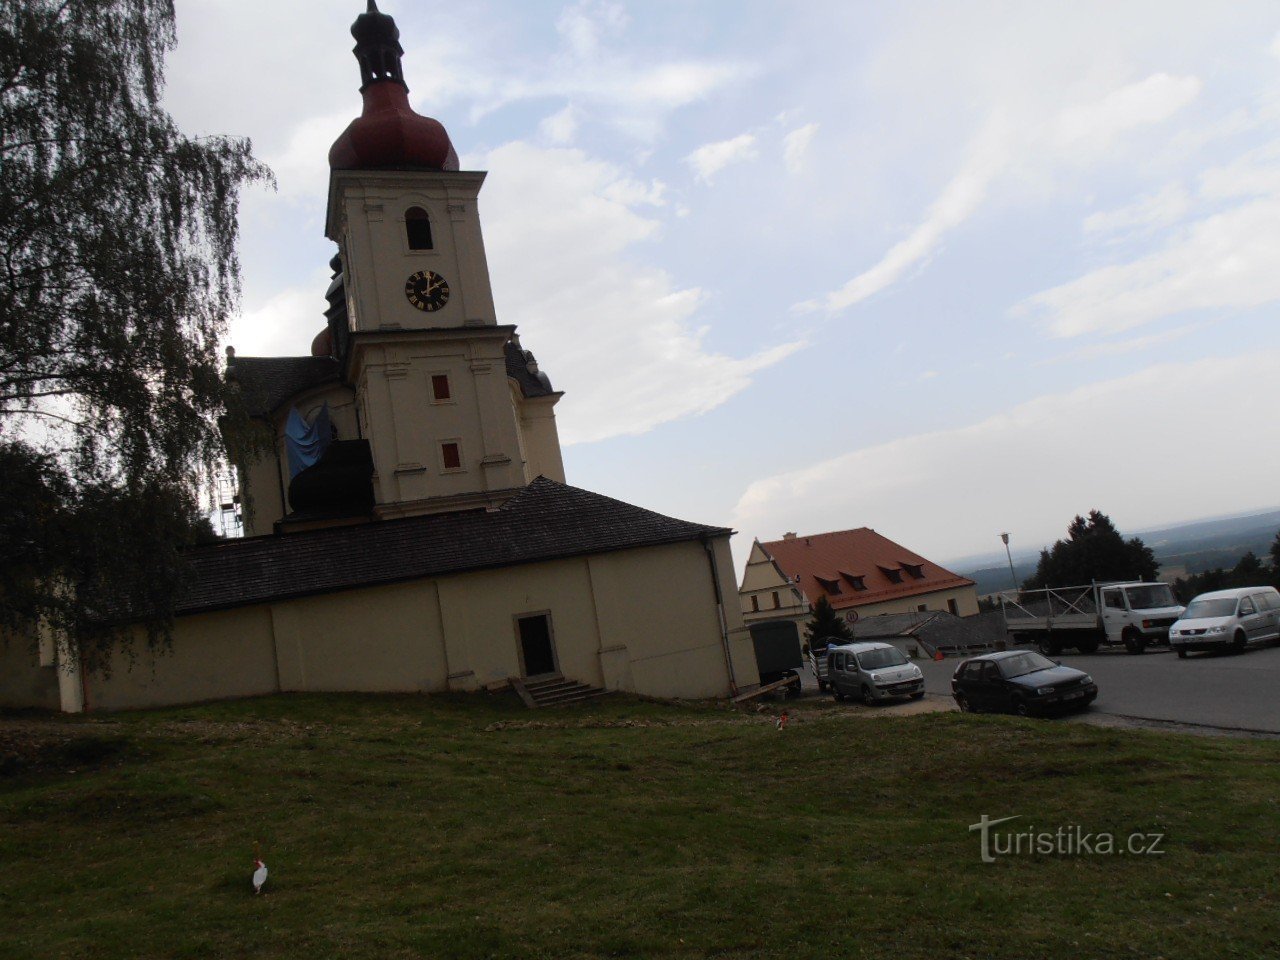 Μπαρόκ εκκλησία της Παναγίας στο Dobrá Voda κοντά στο Horní Stropnice στο Novohradsk